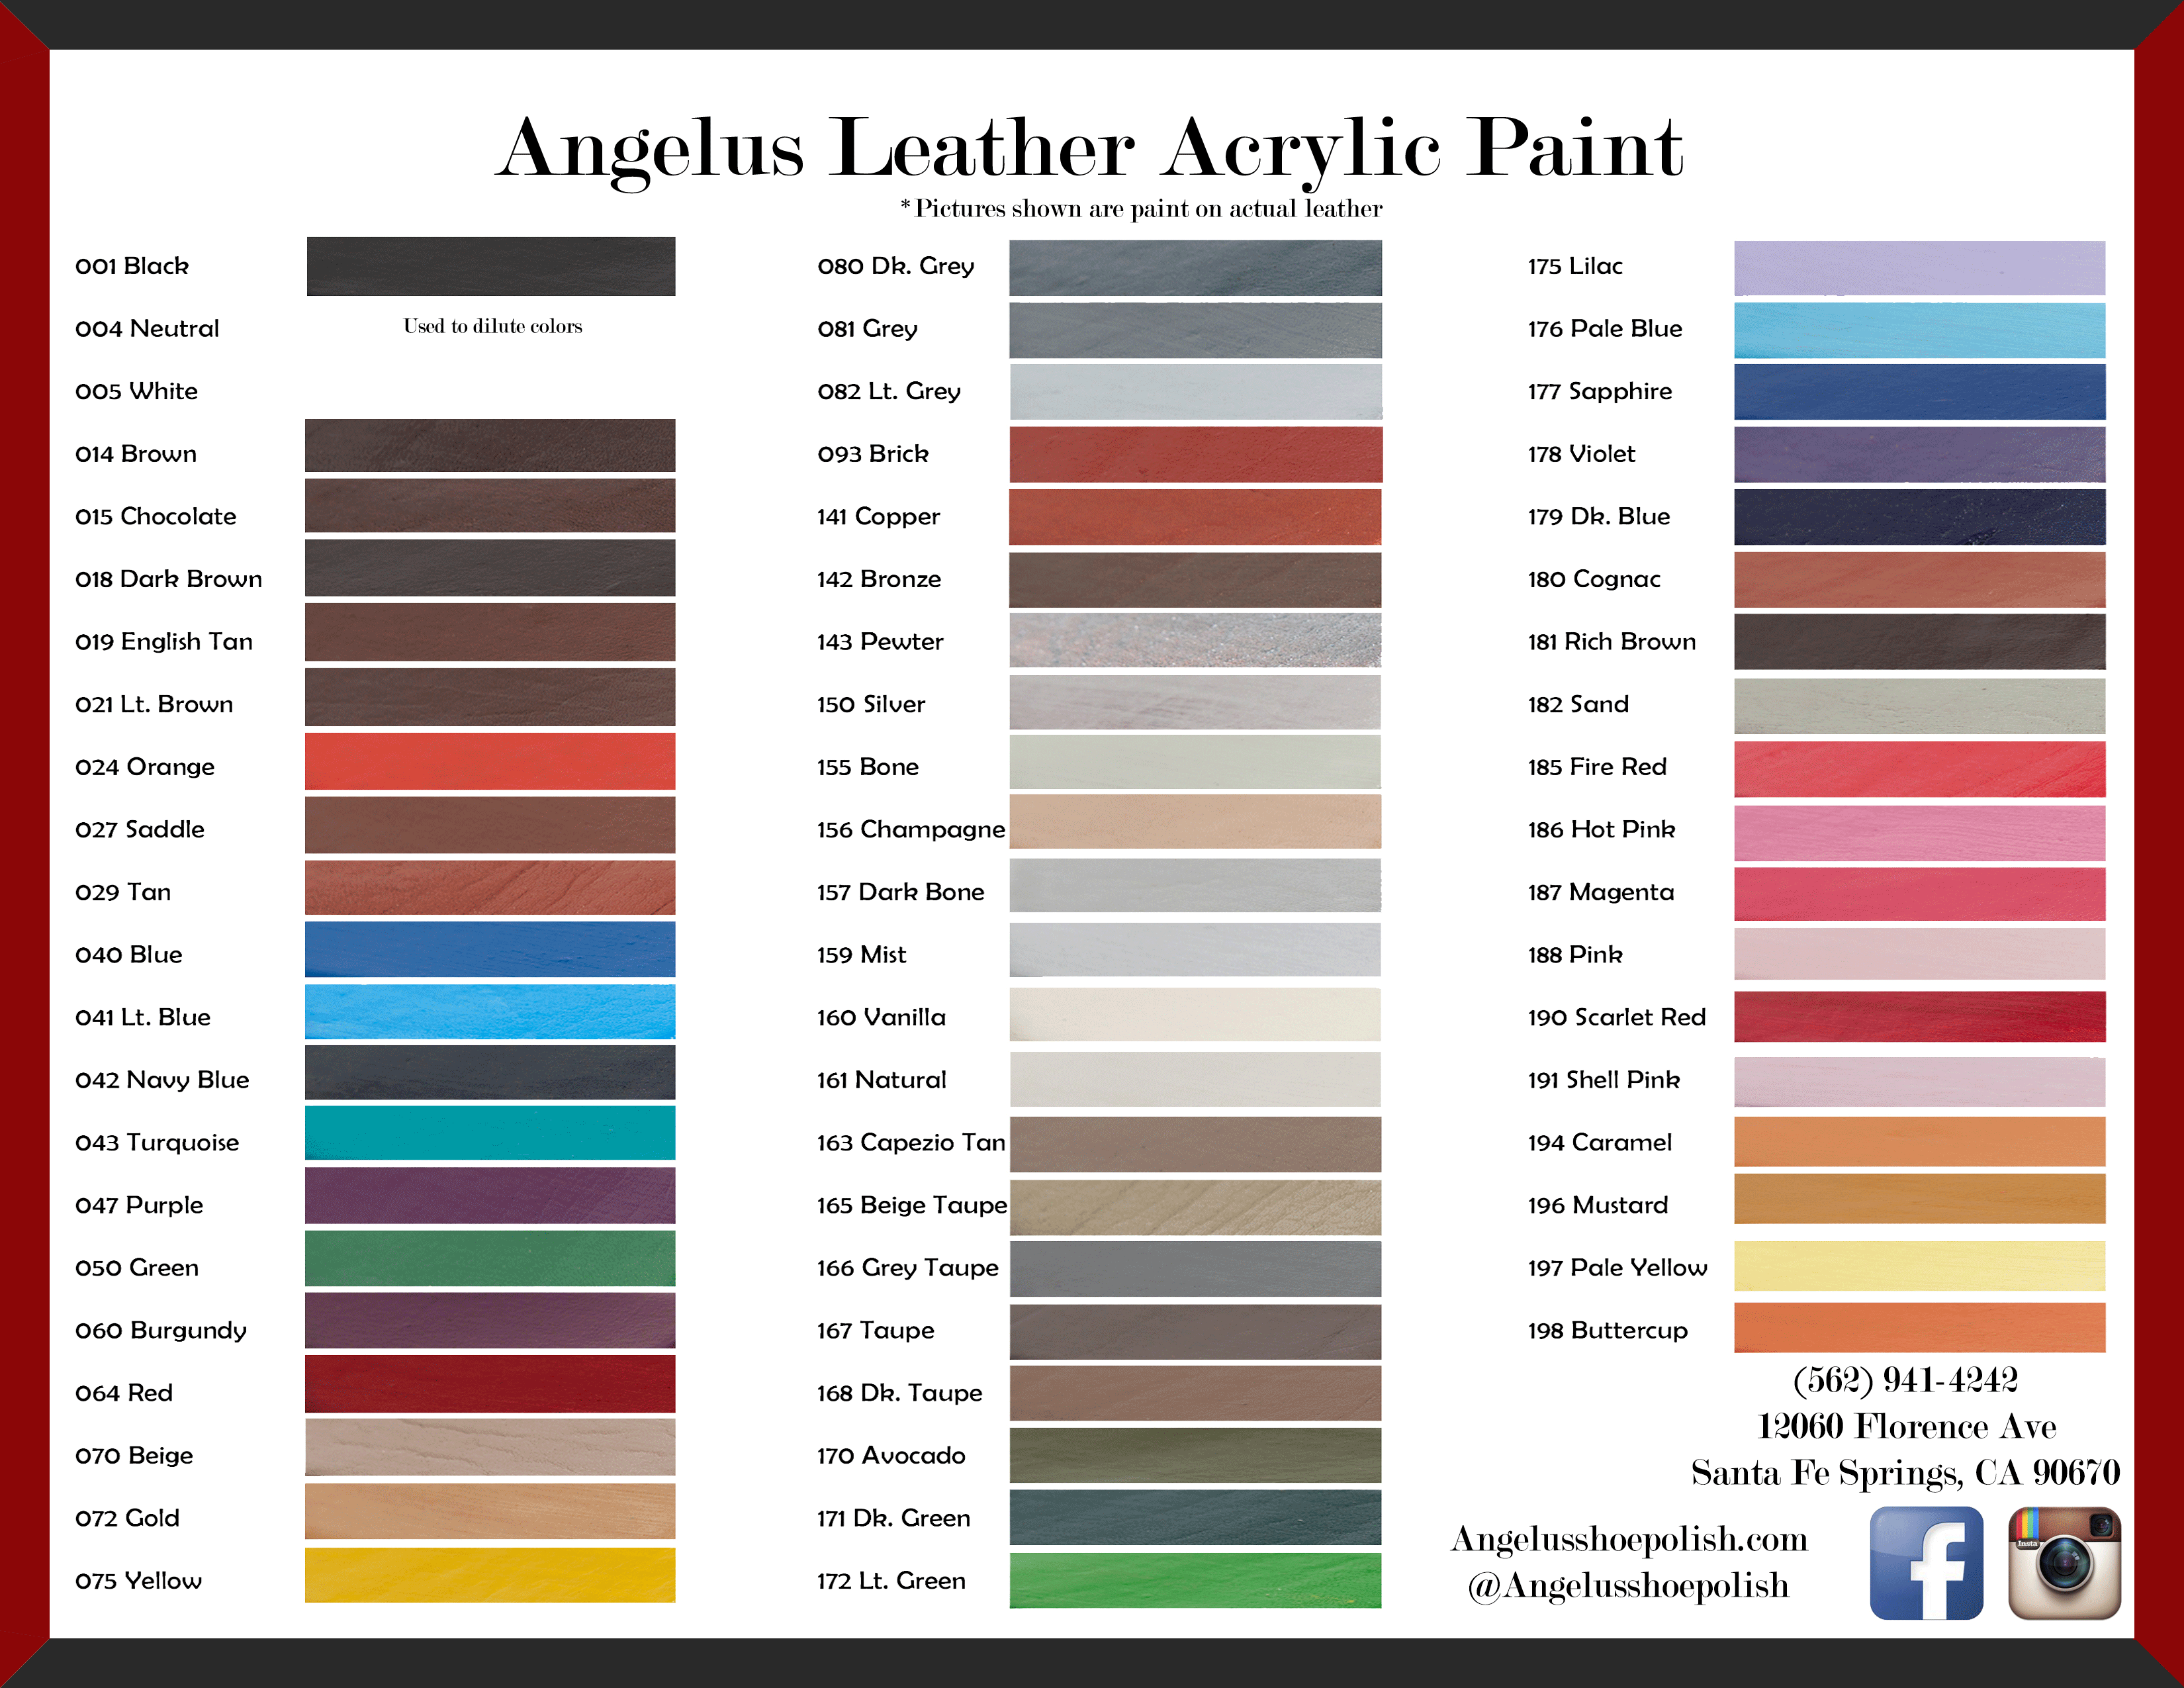 Angelus Leather Paint Lava Orange